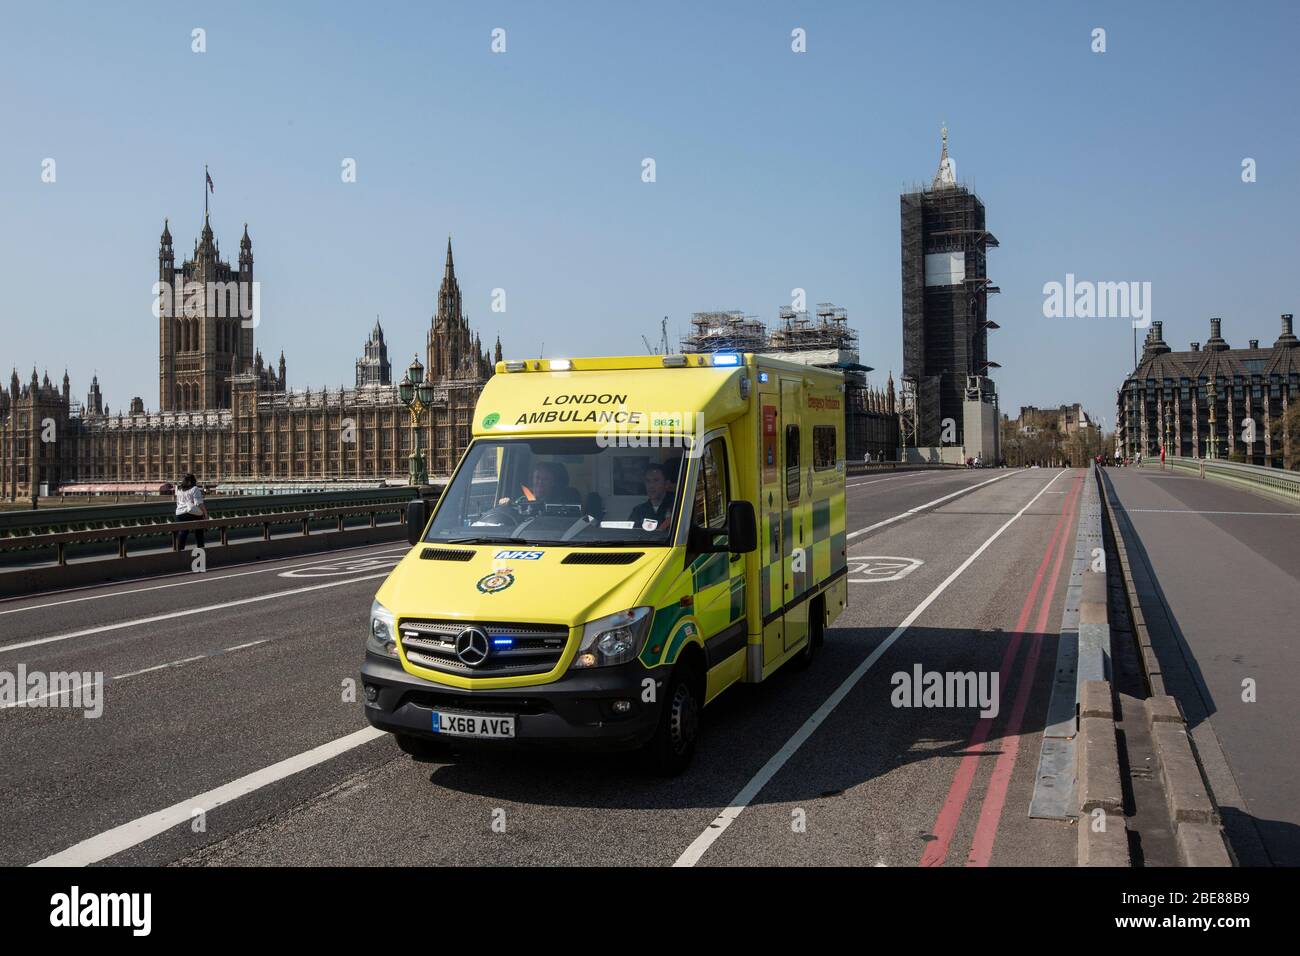 L'ambulance traverse le pont Westminster en direction de l'hôpital St Thomas pendant la pandémie de Coronavirus COVID-19, Londres, Angleterre, Royaume-Uni Banque D'Images